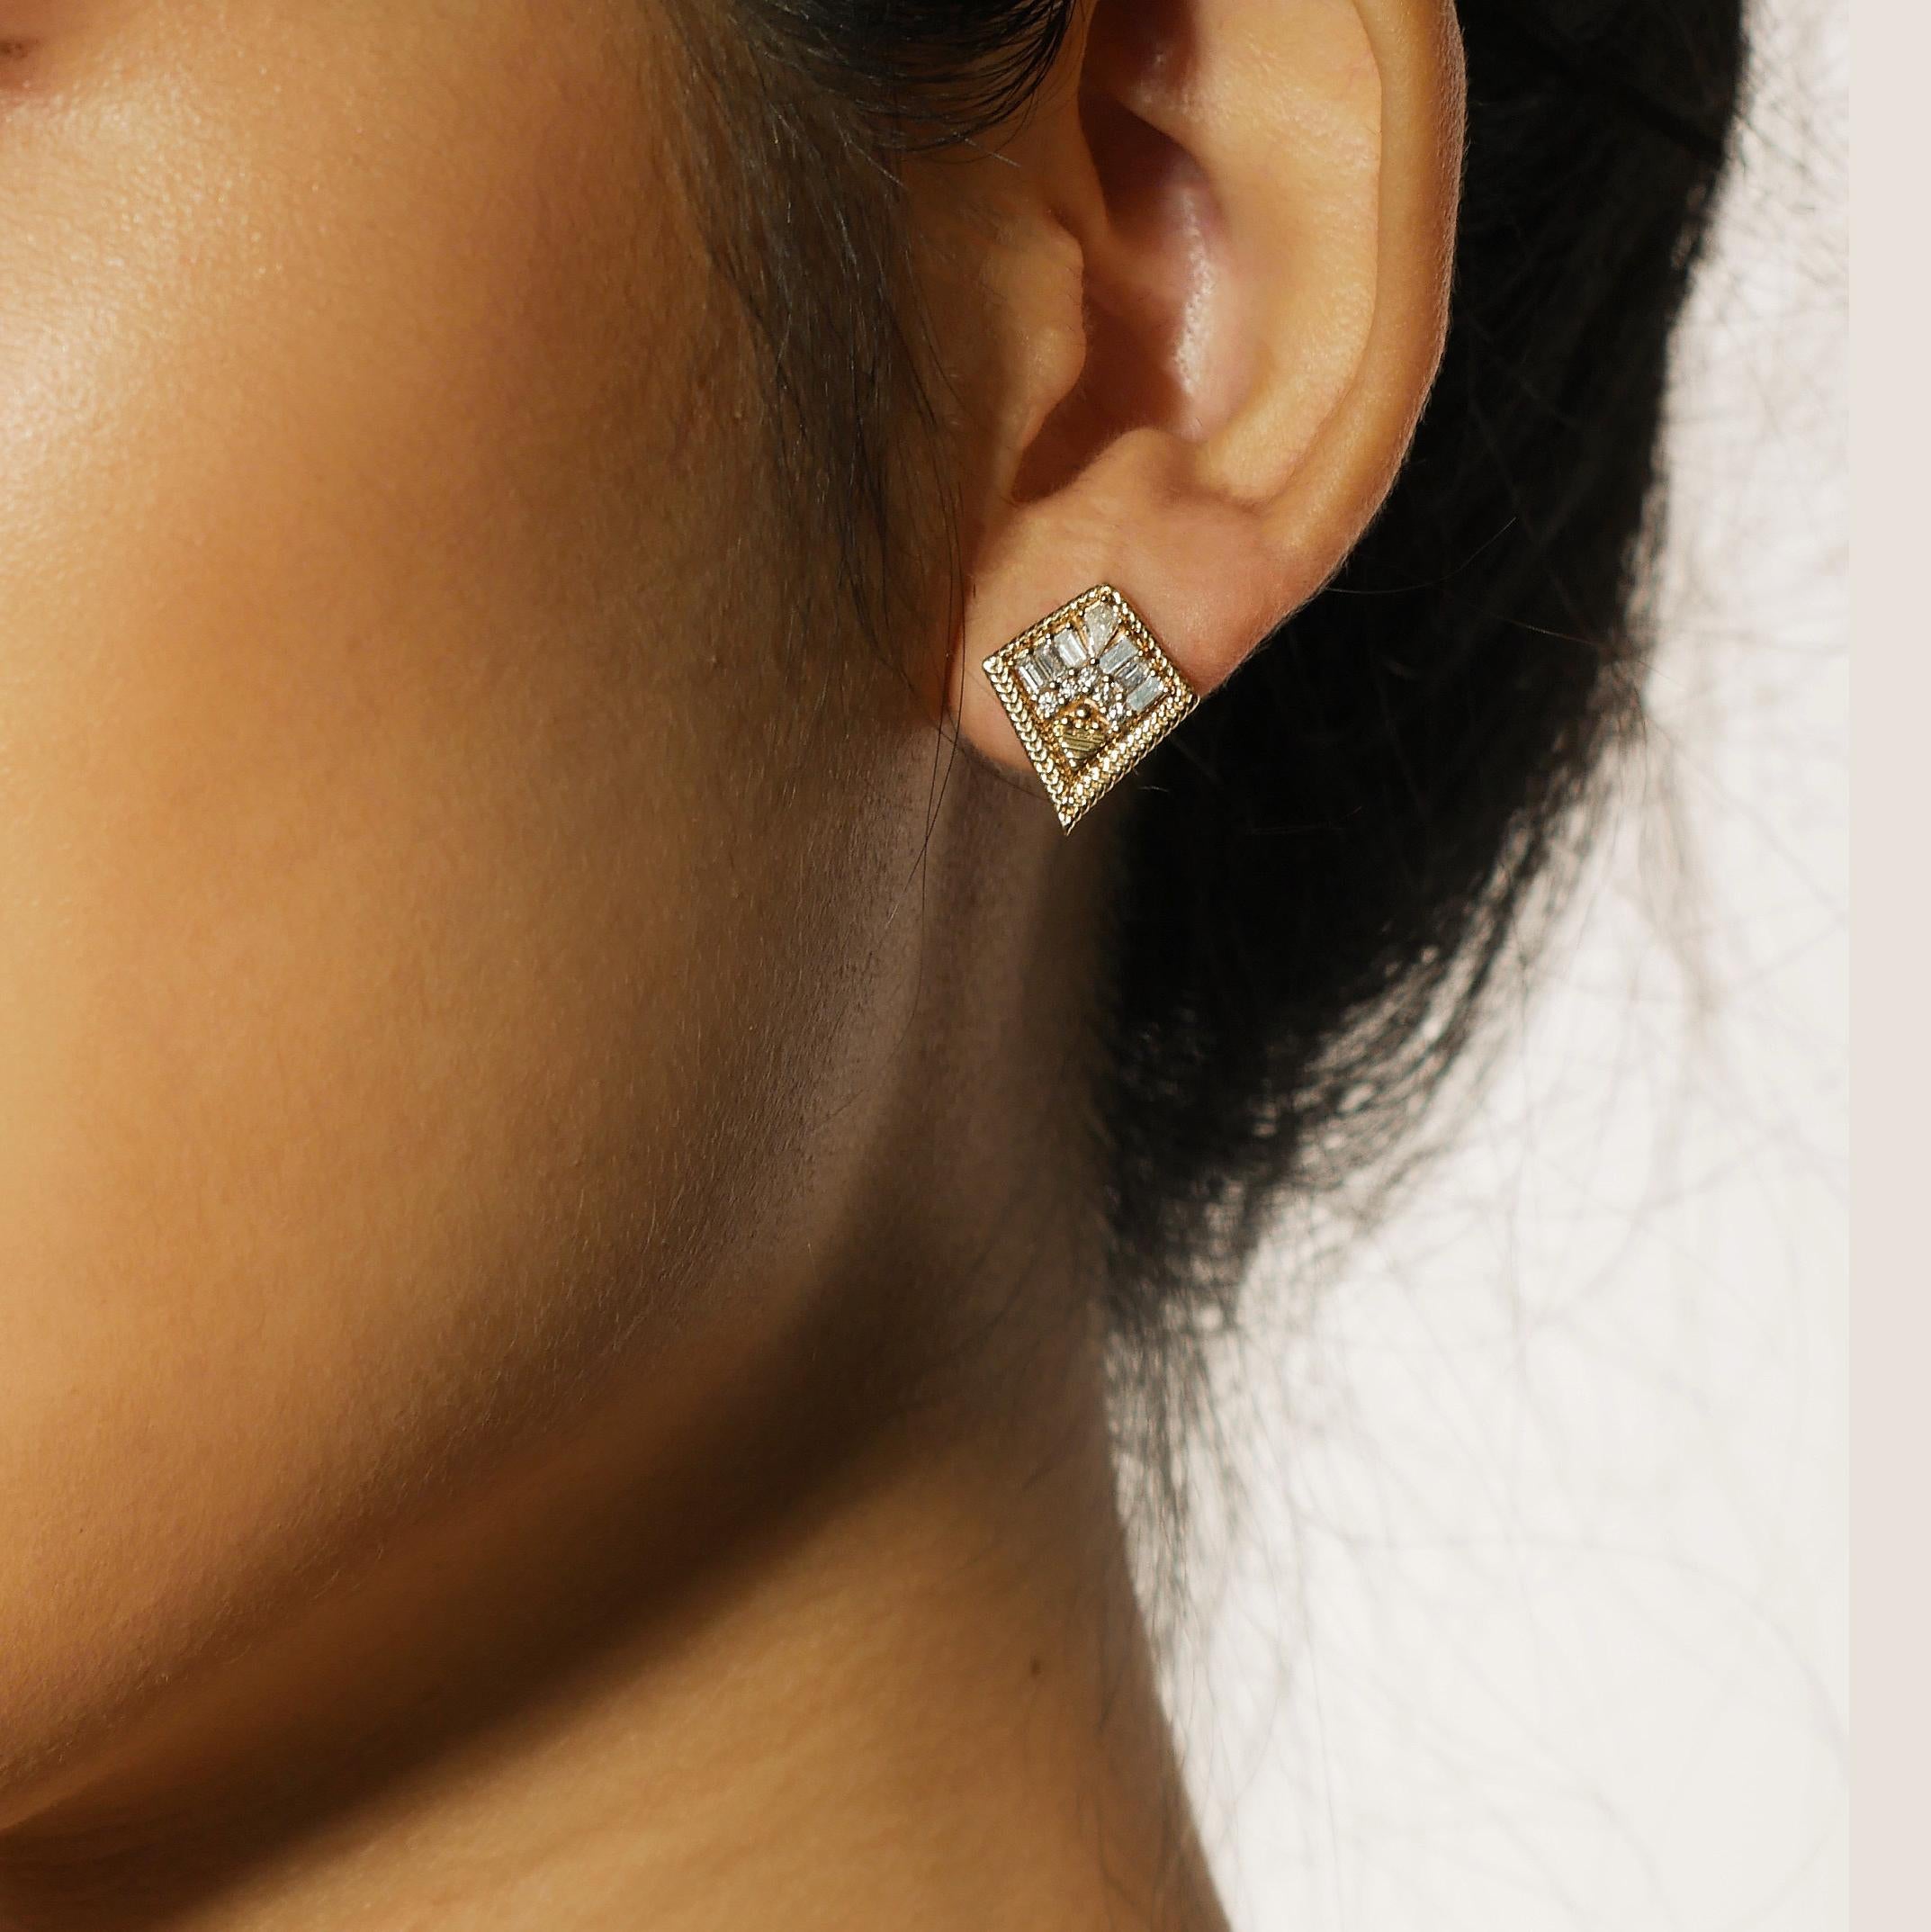 .75 carat diamond earrings on ear